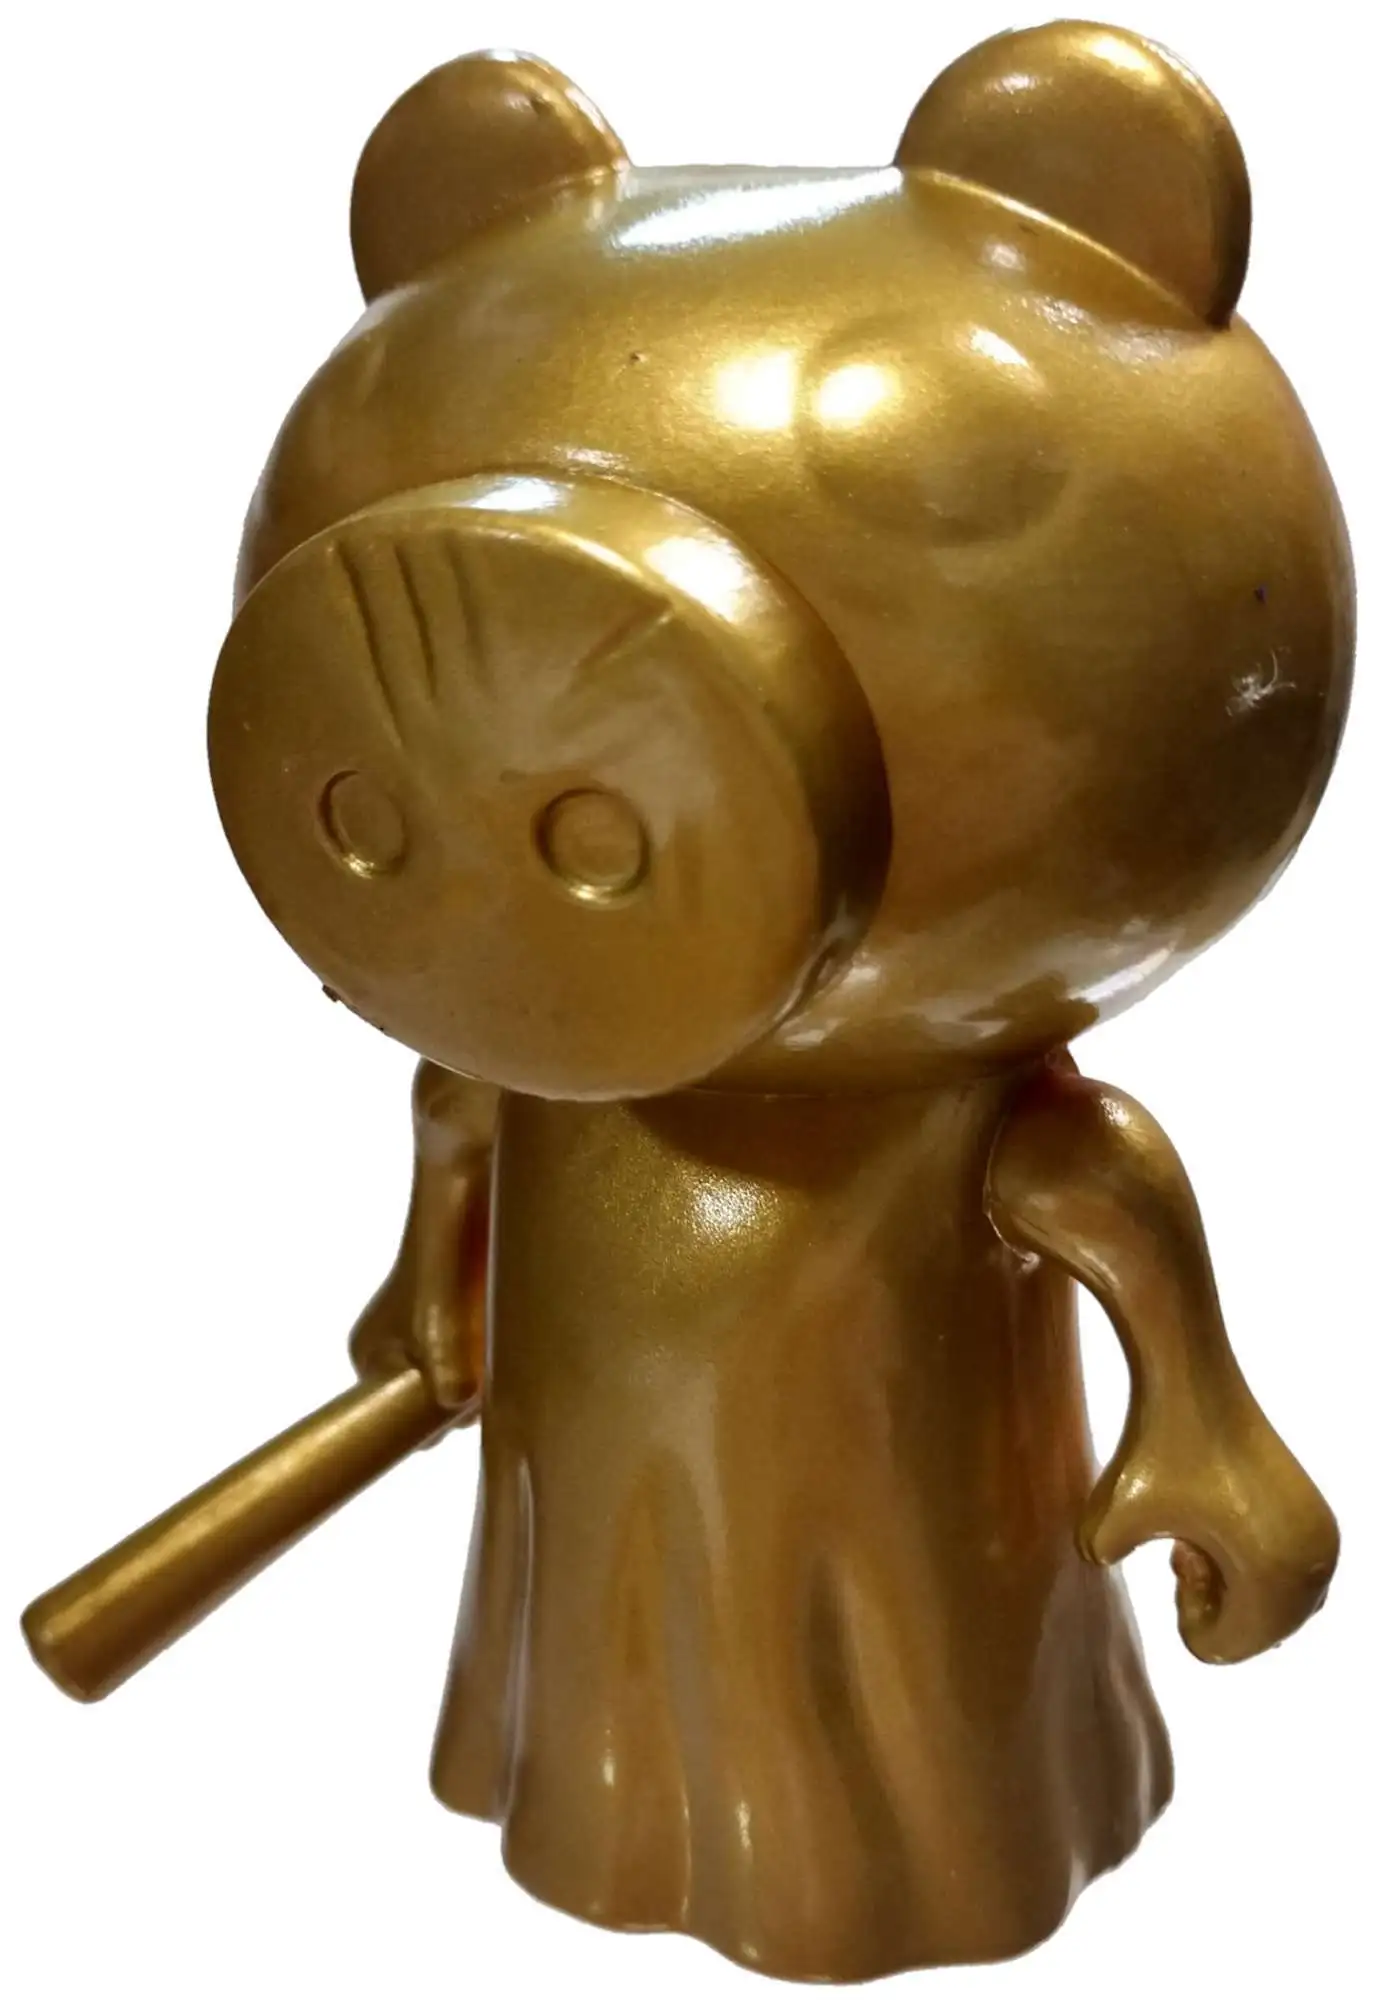 Robô Piggy Gold 🐷 [Vip]⚡ - Outros - DFG